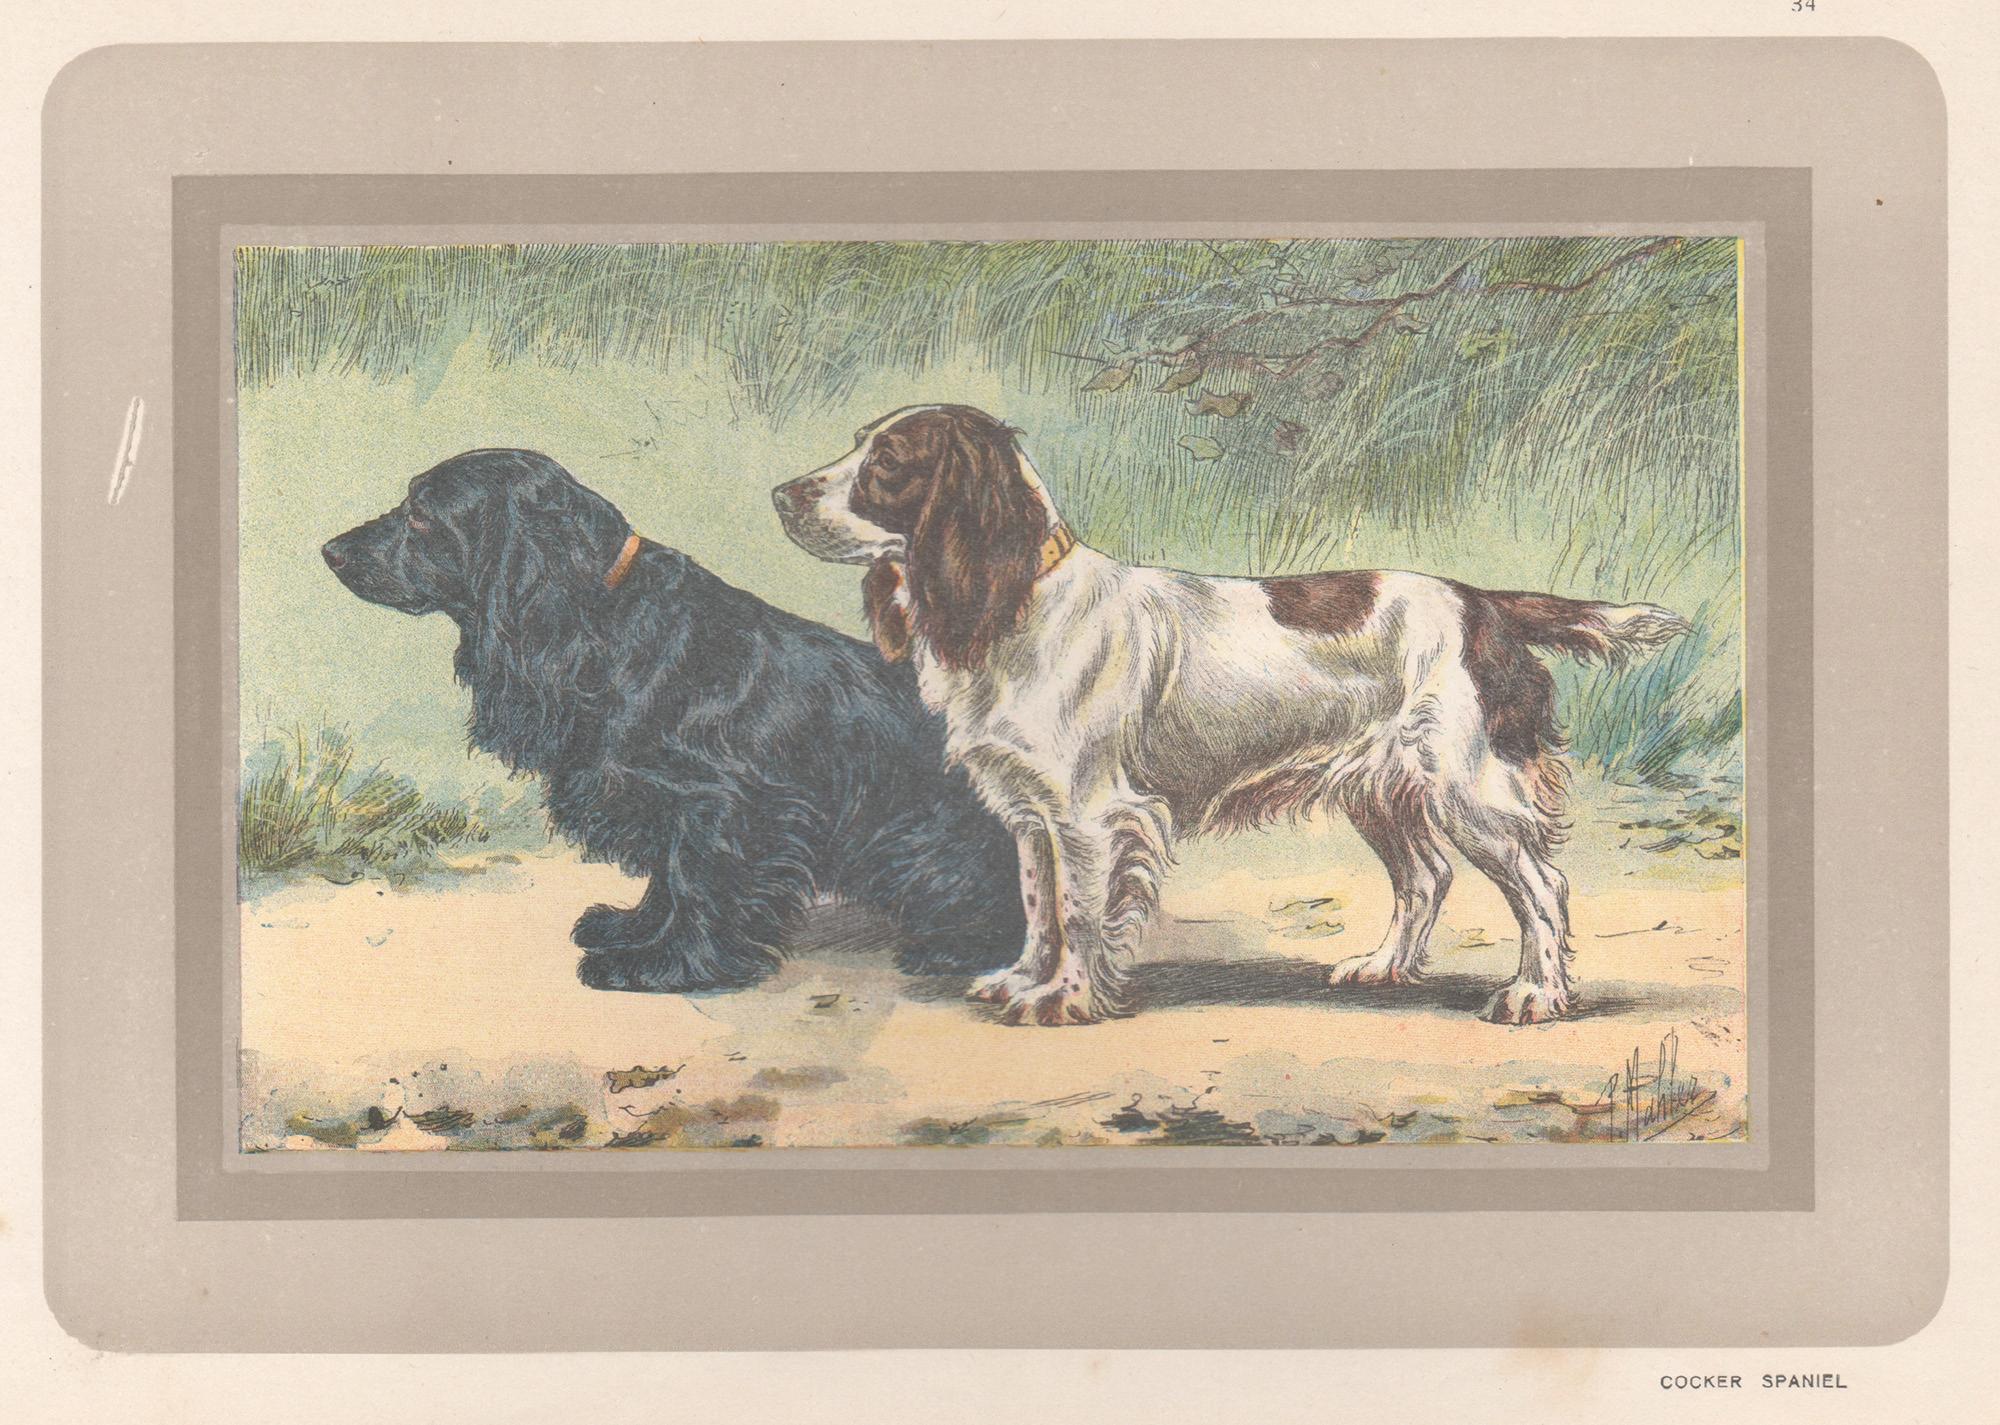 Animal Print P. Mahler - Cocker Spaniel, impression chromolithographie d'un chien de chasse français, 1931